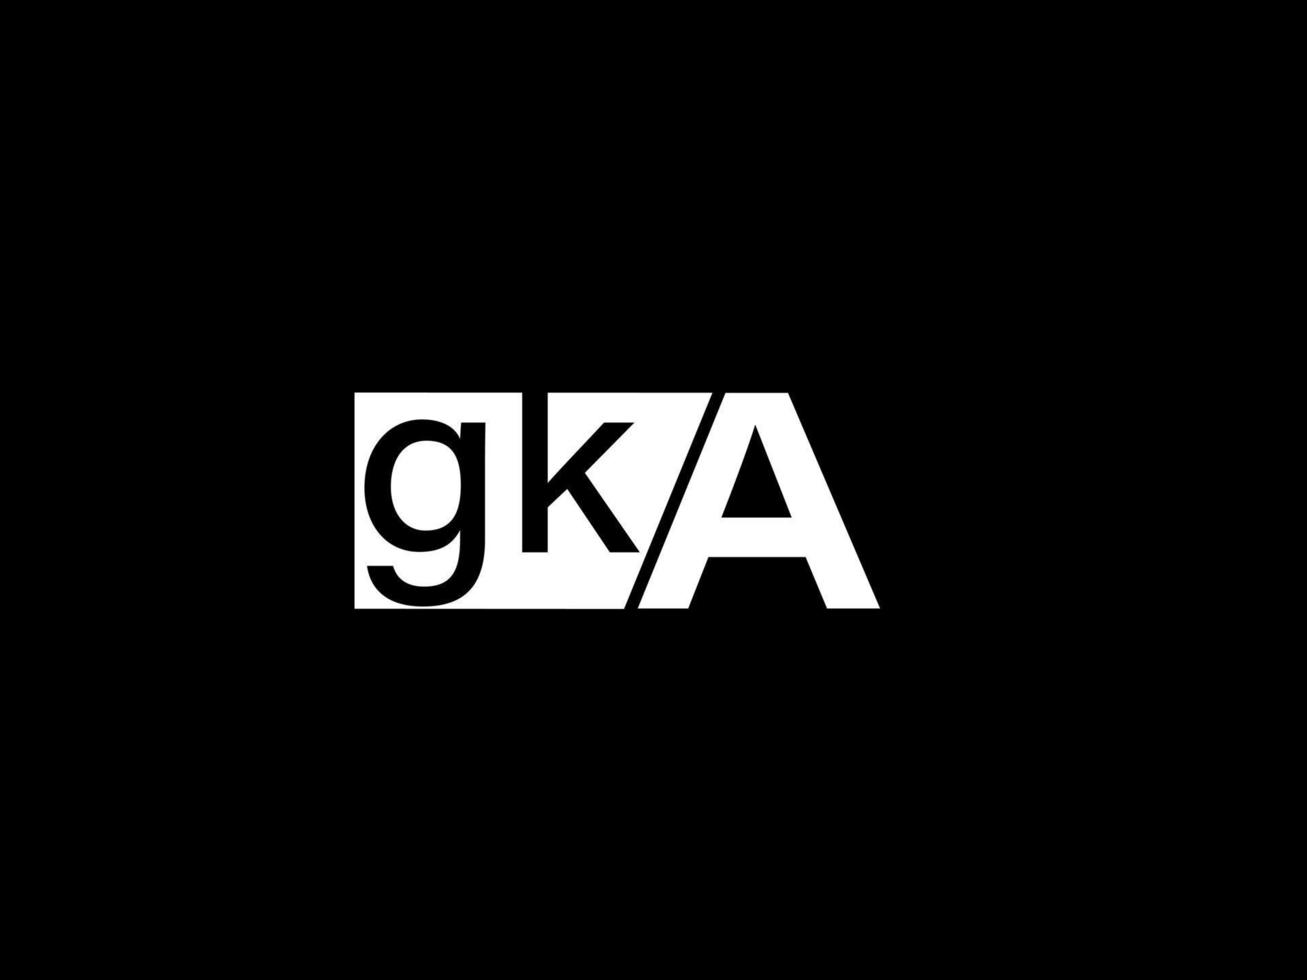 logotipo gka e arte vetorial de design gráfico, ícones isolados em fundo preto vetor